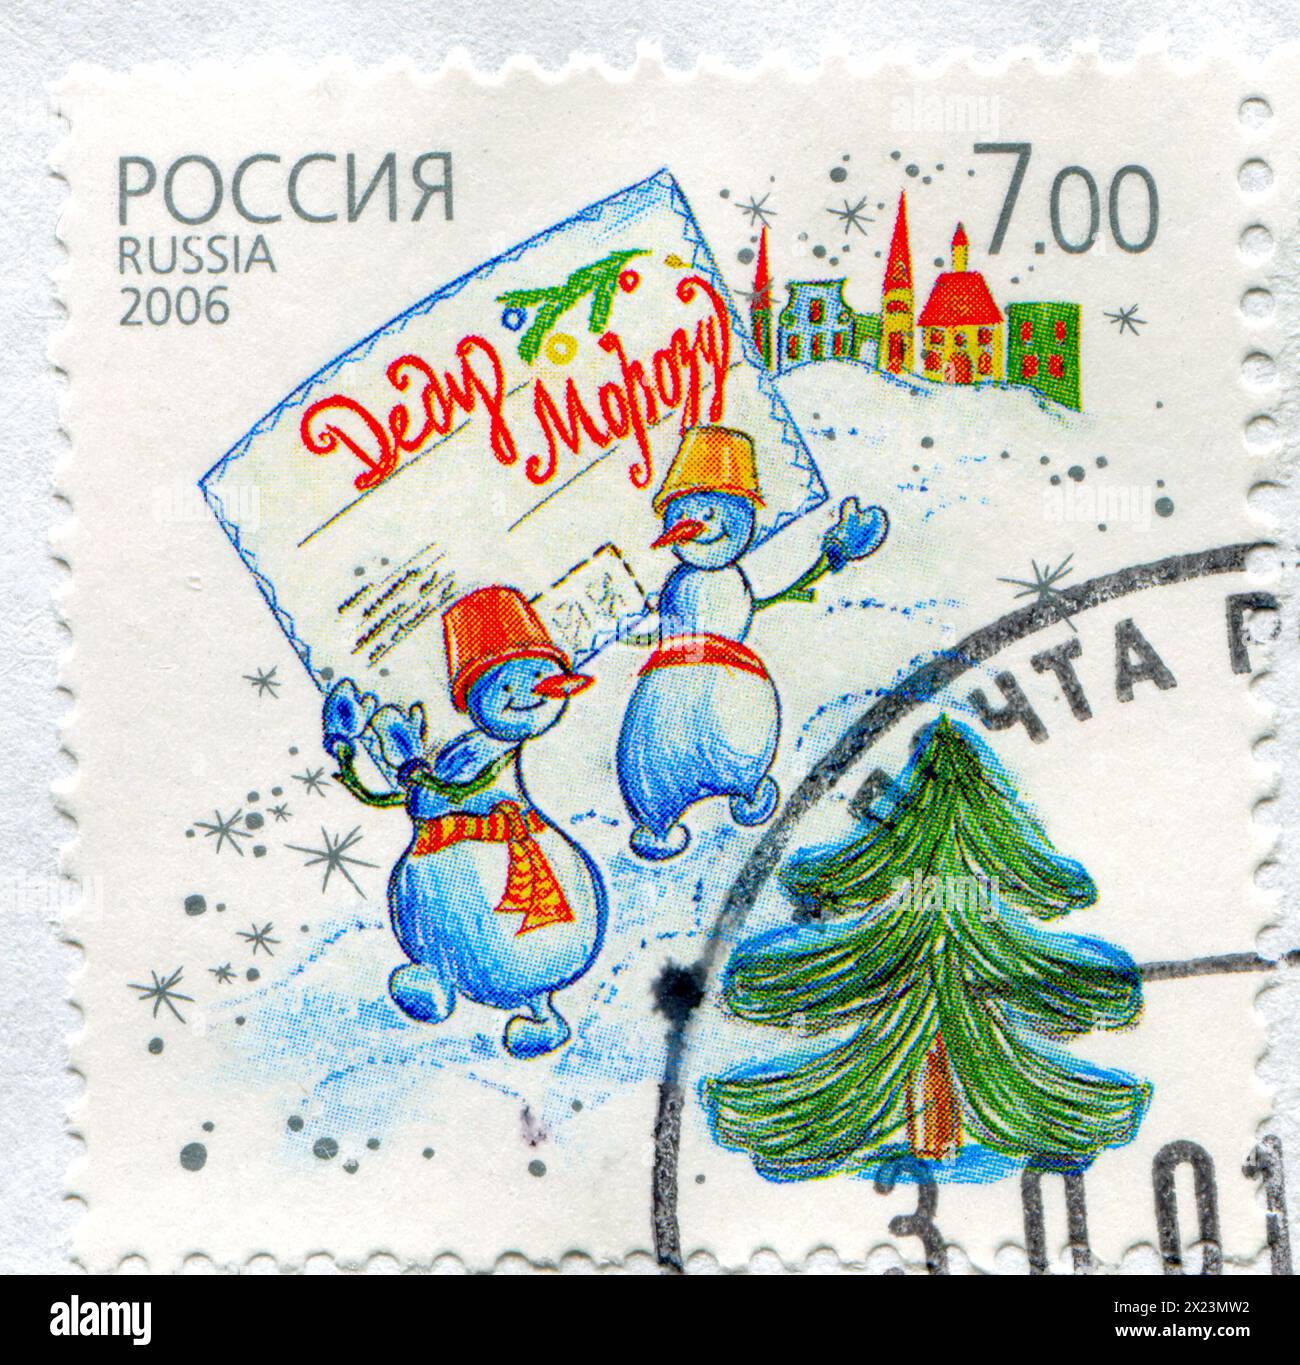 RUSSIE - VERS 2006 : timbre imprimé par la Russie, montre Snowmans, vers 2006 Banque D'Images